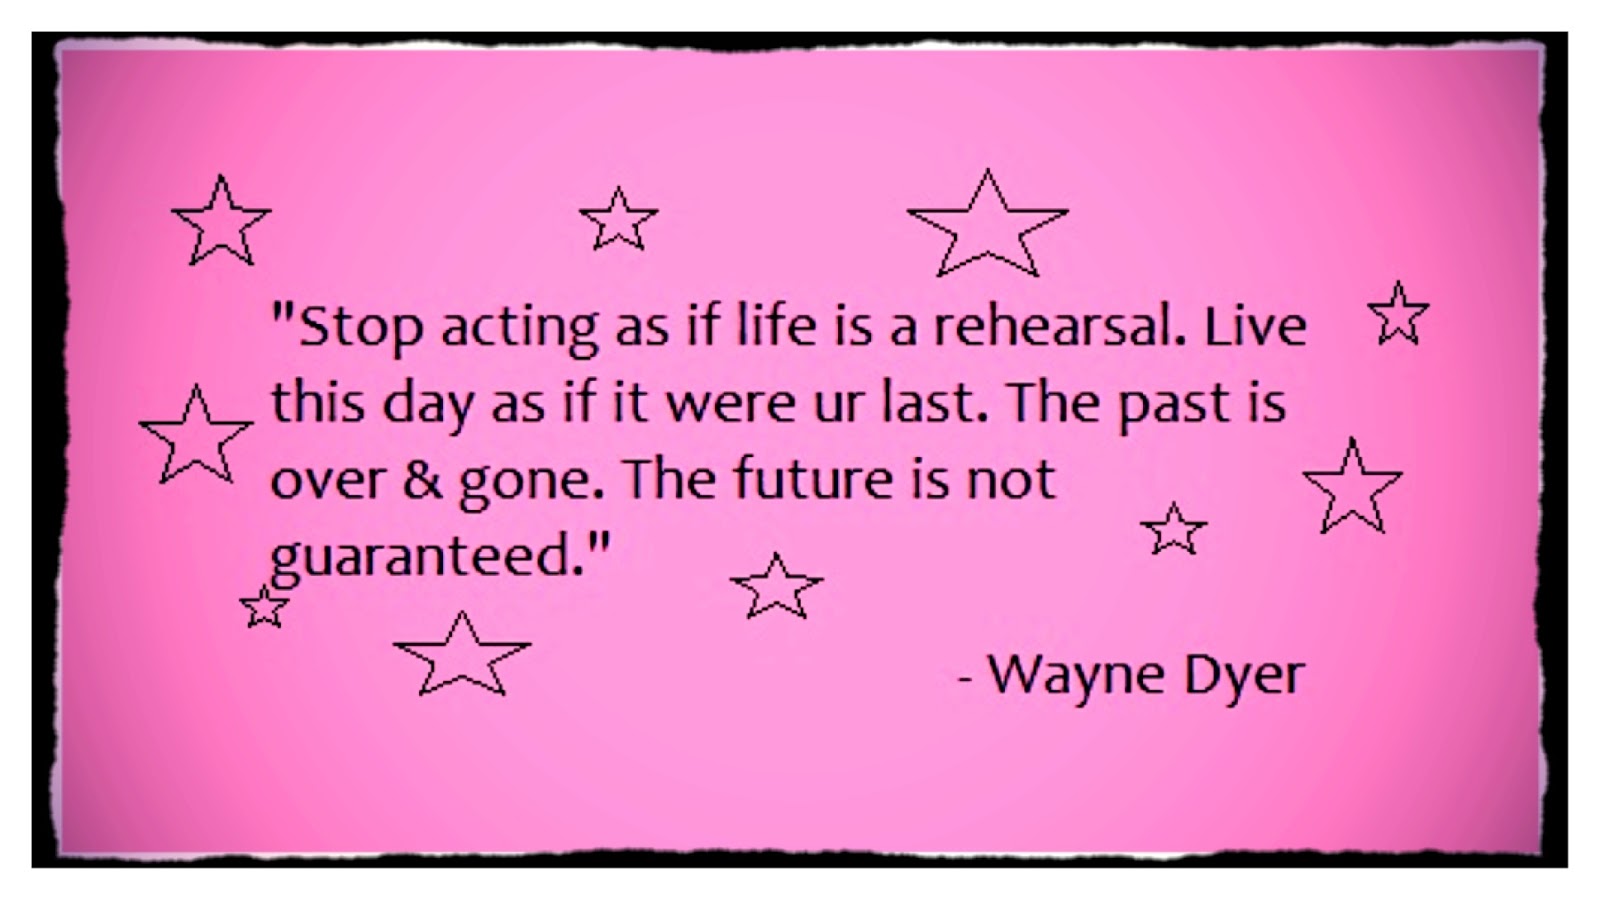 Wayne Dyer's quote #4